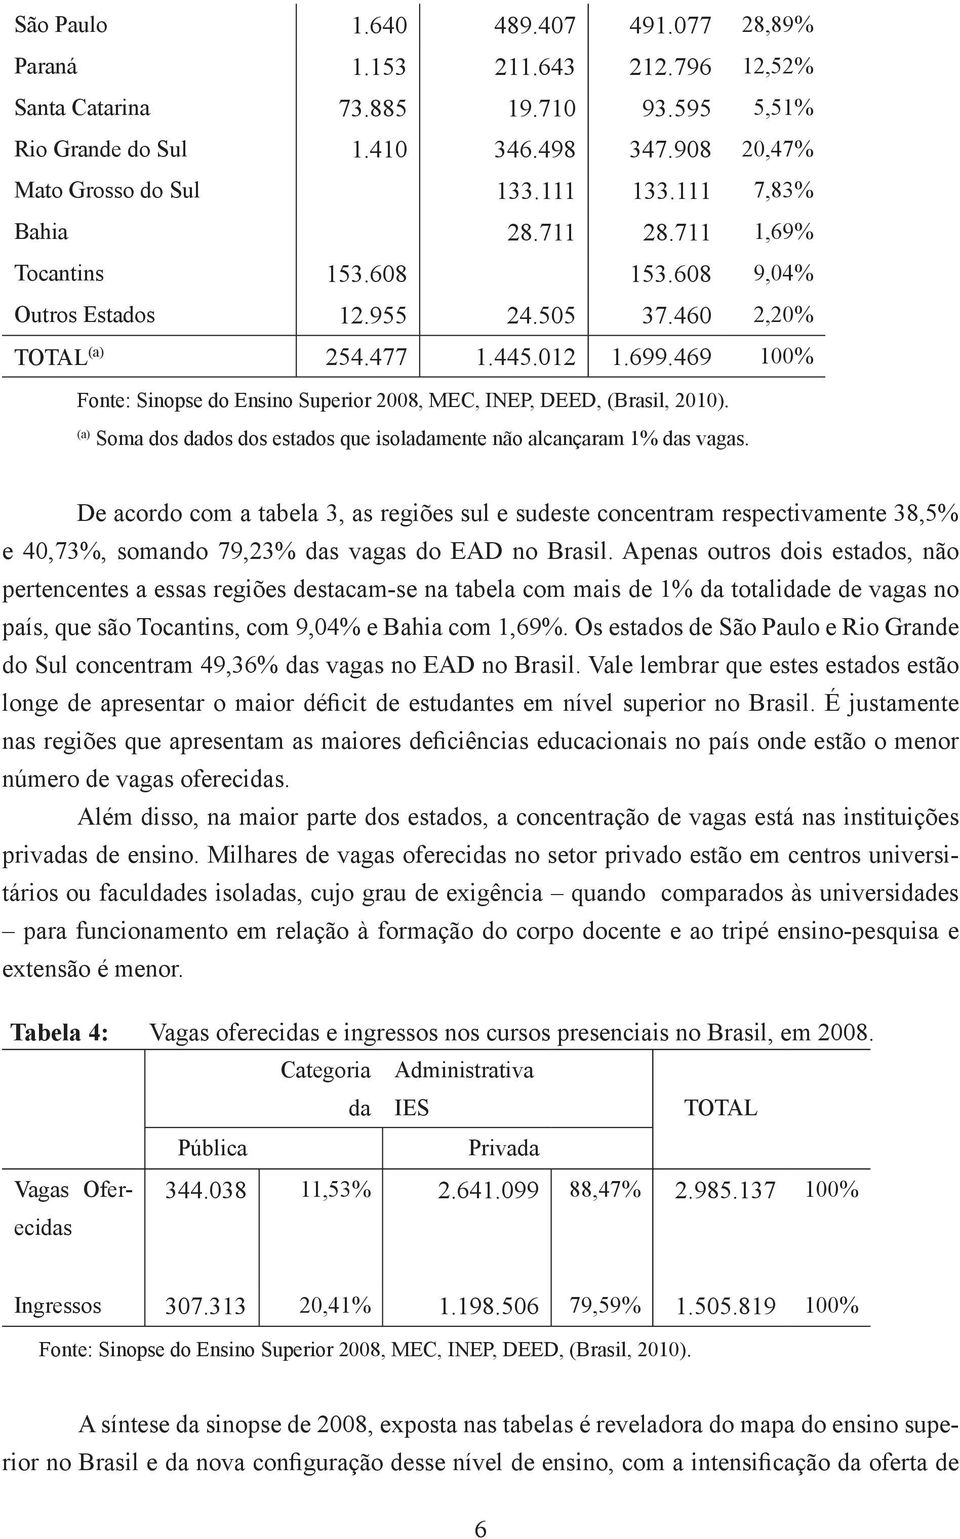 469 100% Fonte: Sinopse do Ensino Superior 2008, MEC, INEP, DEED, (Brasil, 2010). (a) Soma dos dados dos estados que isoladamente não alcançaram 1% das vagas.